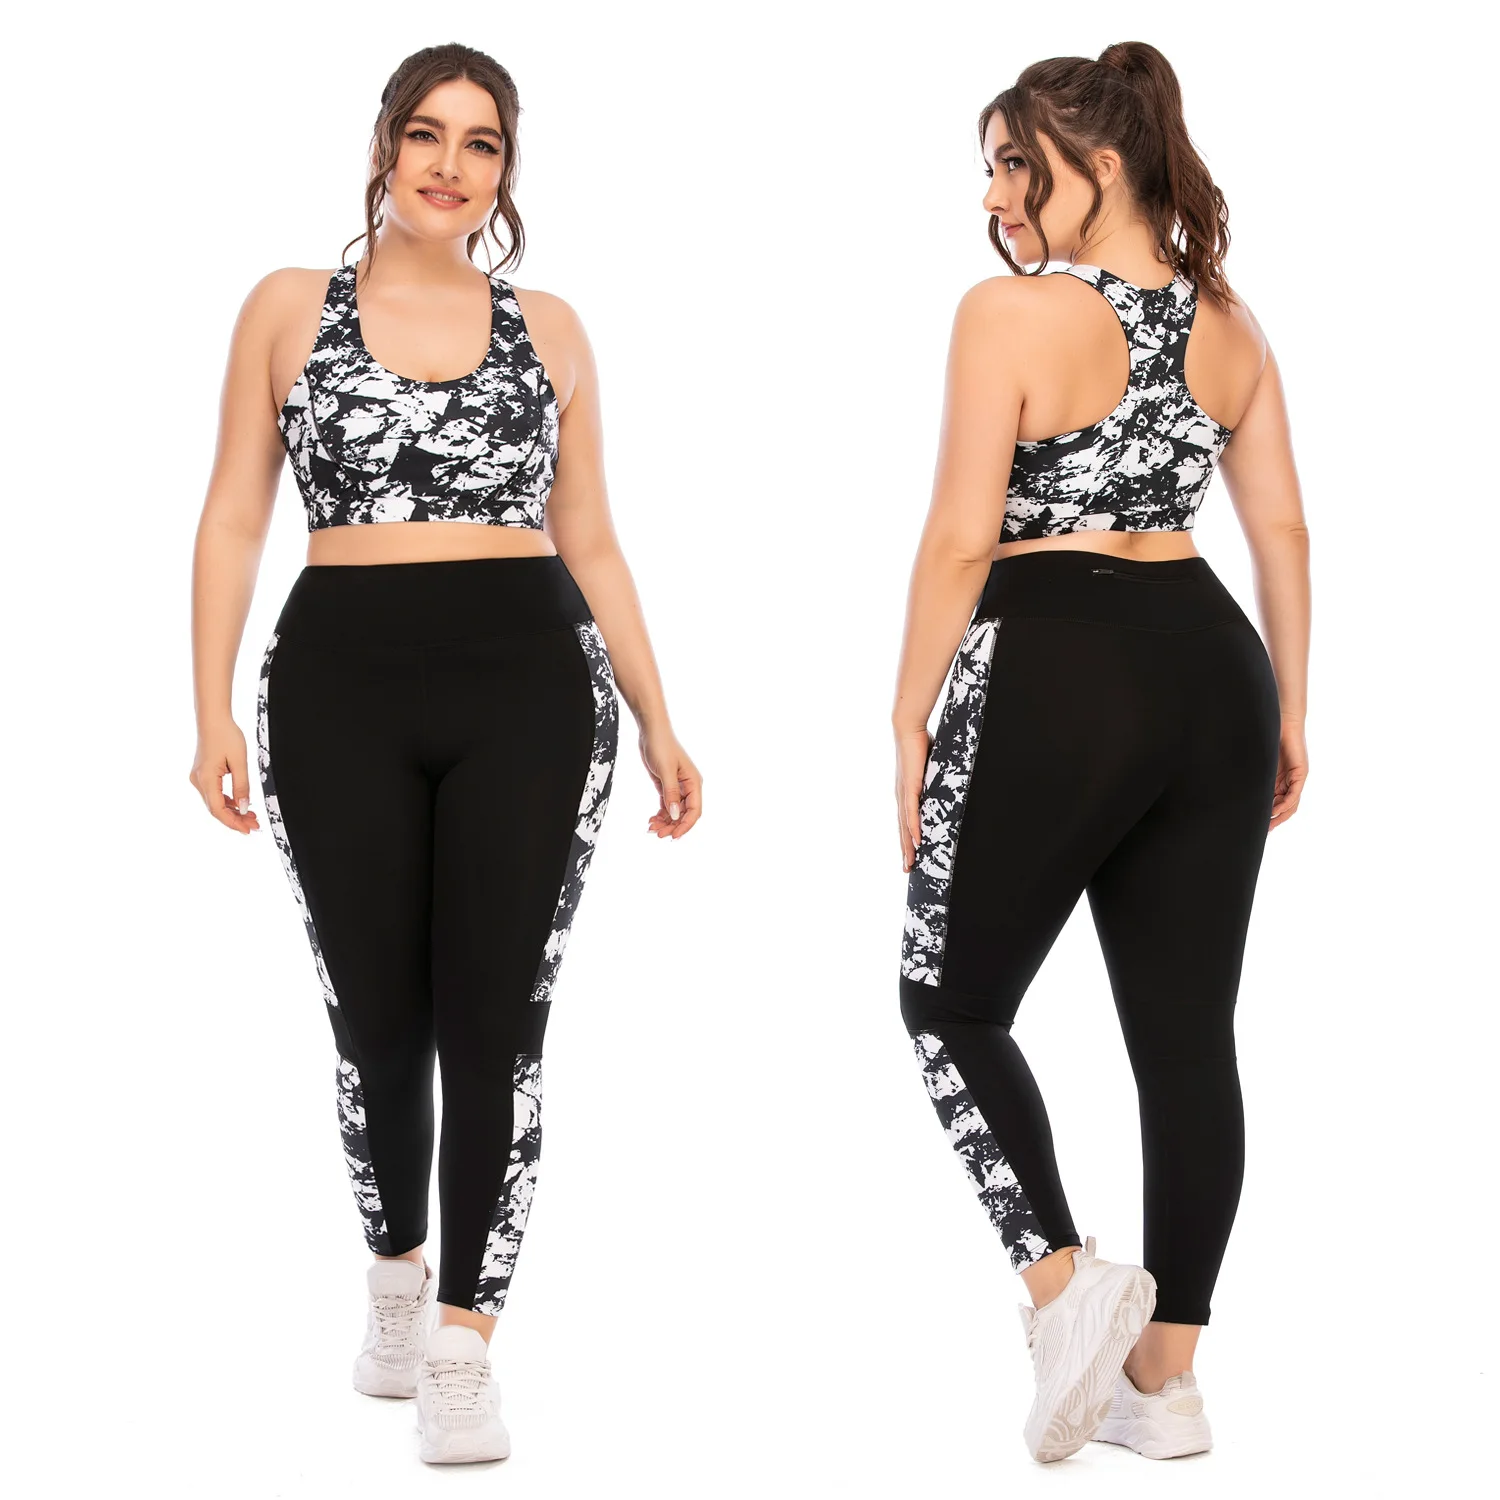 

Plus Size Athletic Apparel Conjuntos Deportivos Mujer Tenue De Sport Gym Outfit Fitness Women Sport Suit Workout Sets Yoga Set